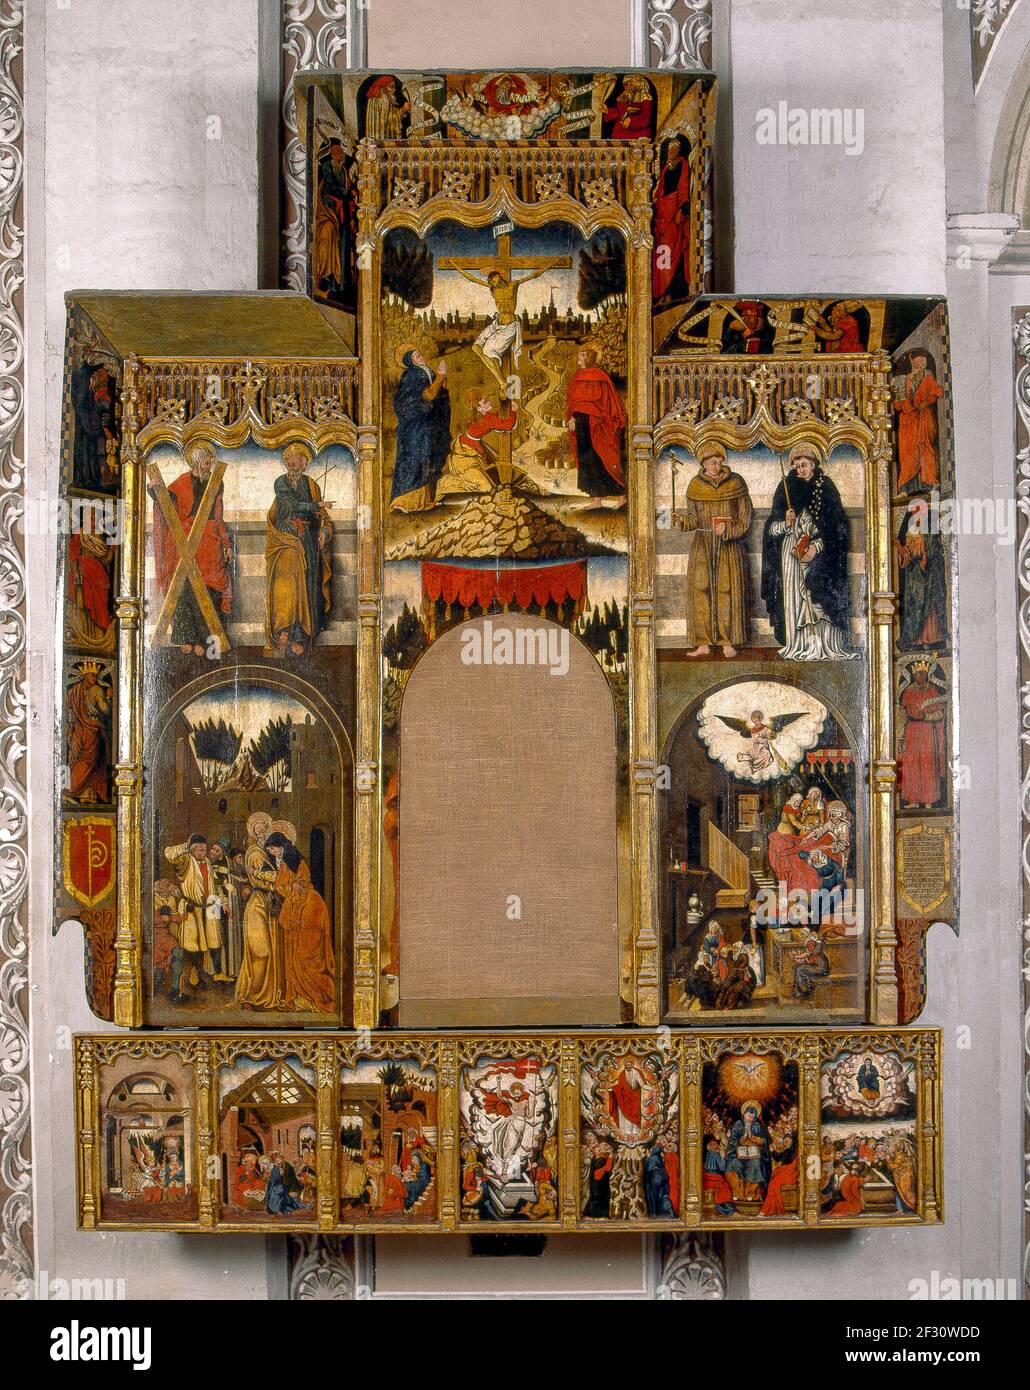 Itsuly Sardaigne province de Cagliari - Sanluri - église Madonna Delle Grazie - remise à neuf - Opéra sarde - XVIe siècle Banque D'Images